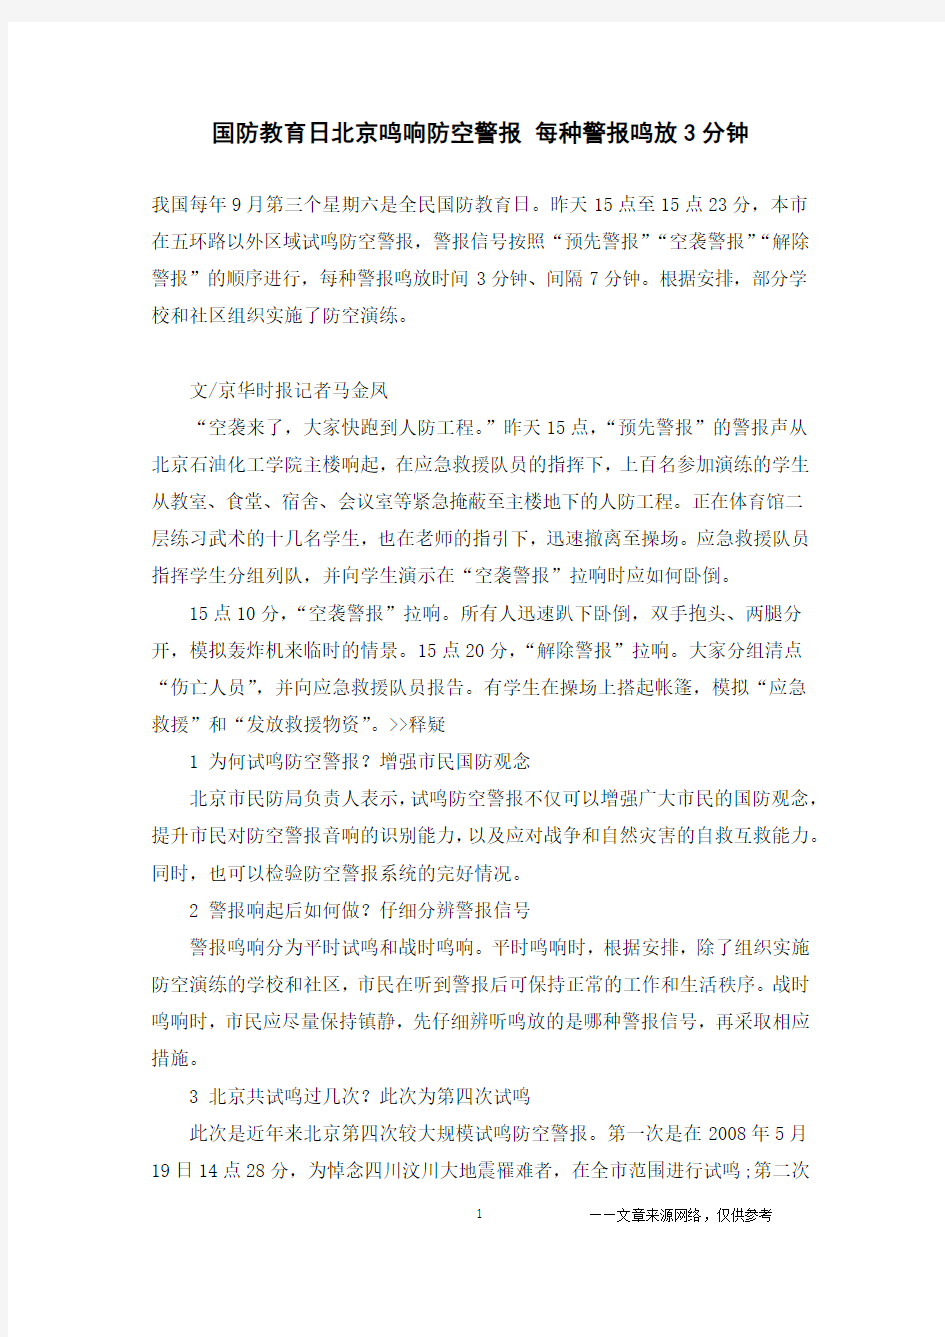 国防教育日北京鸣响防空警报 每种警报鸣放3分钟